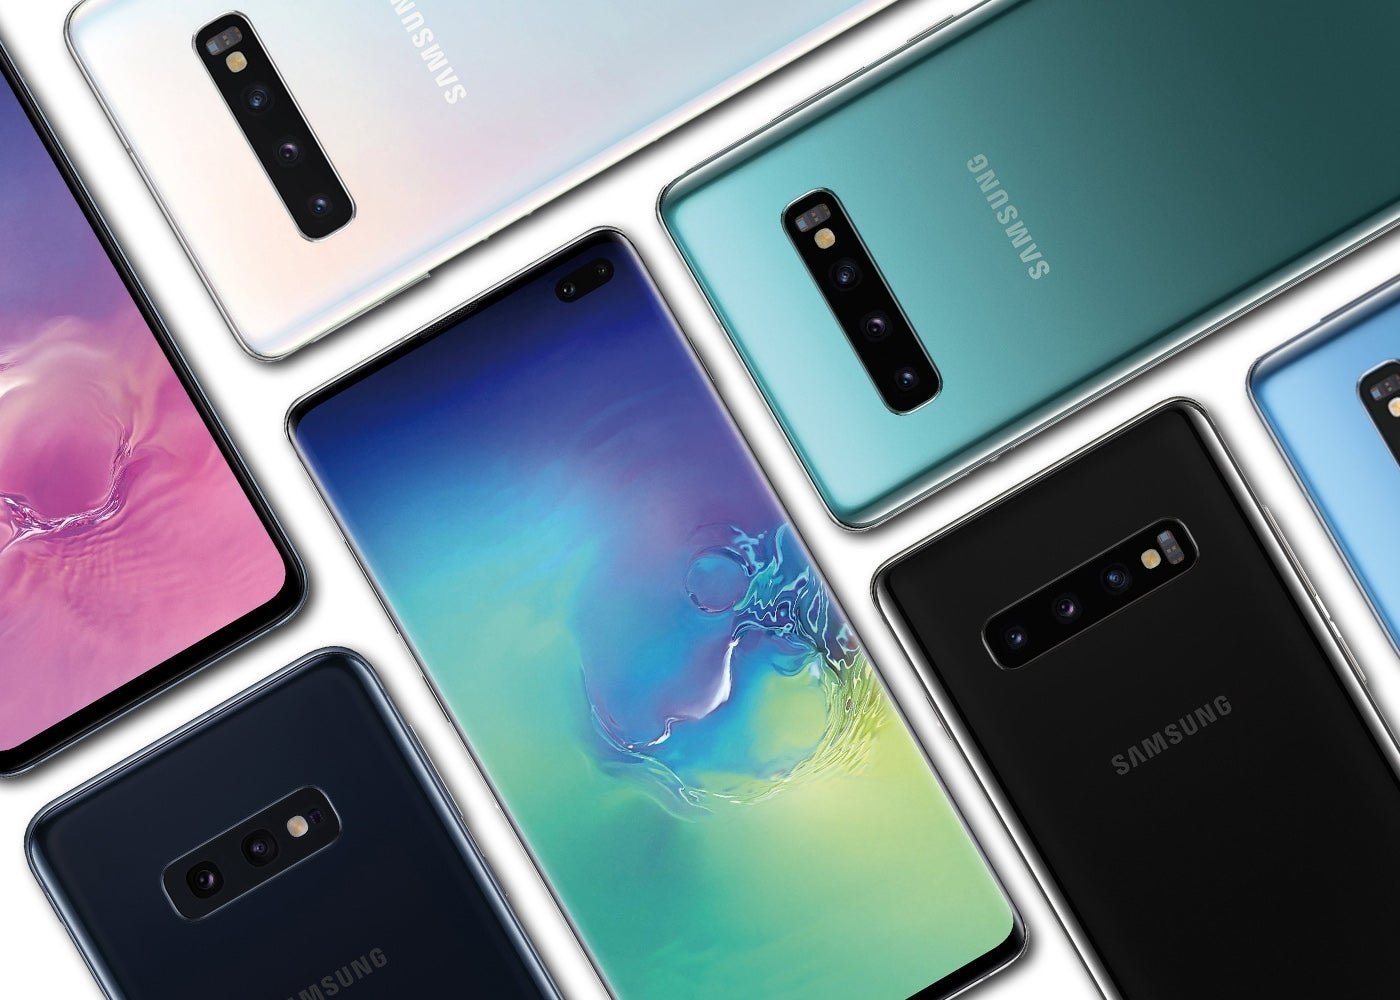 Samsung Galaxy S10, S10 Plus y S10e presentados oficialmente